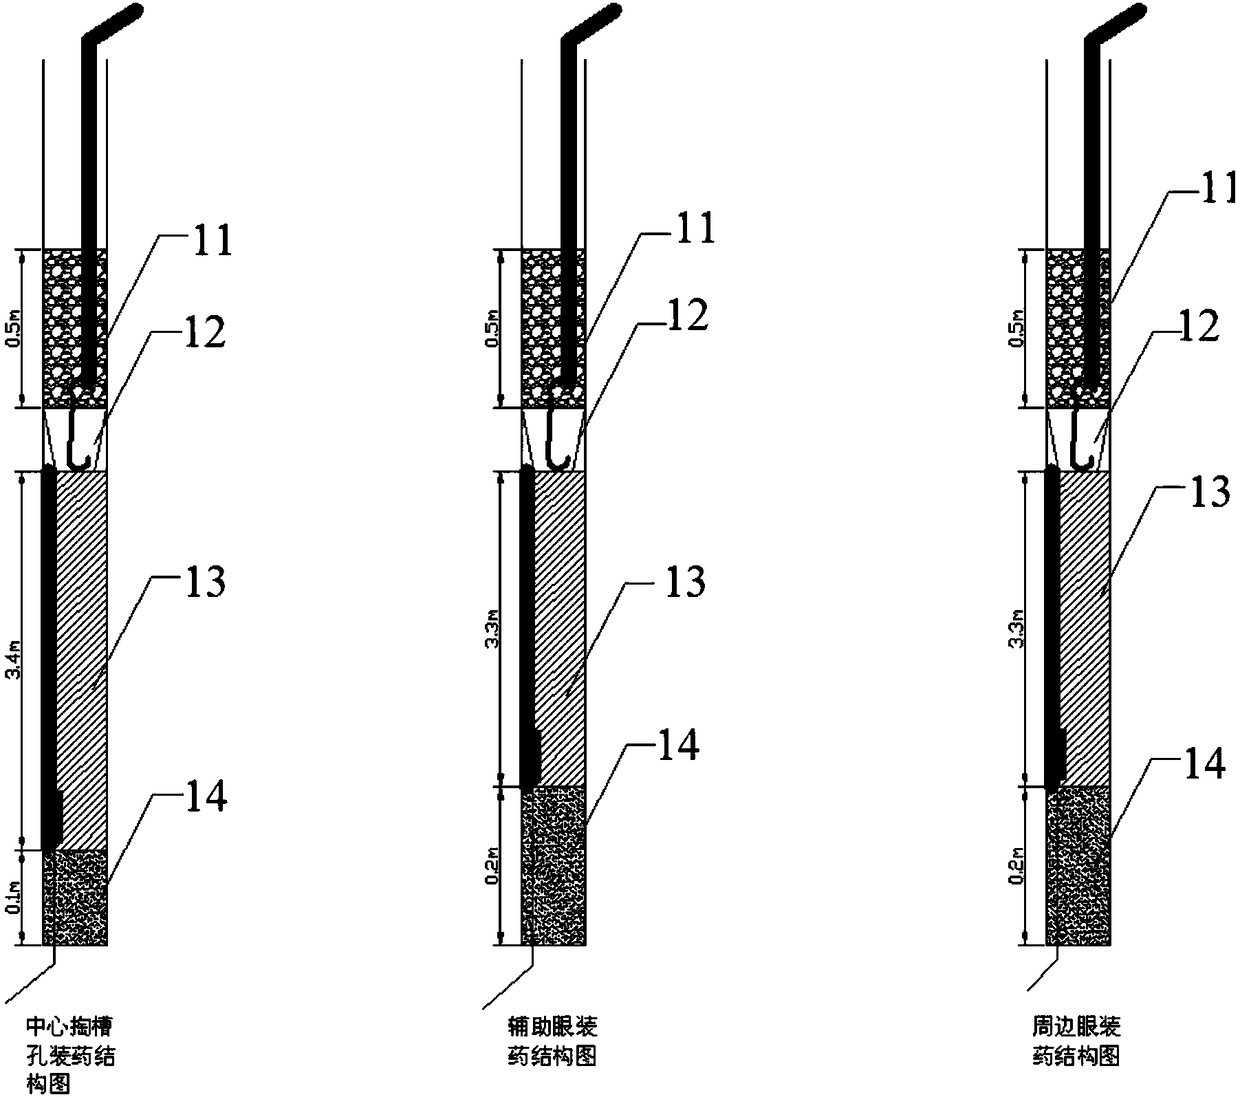 Simultaneous shaft sinking method for segmented raise